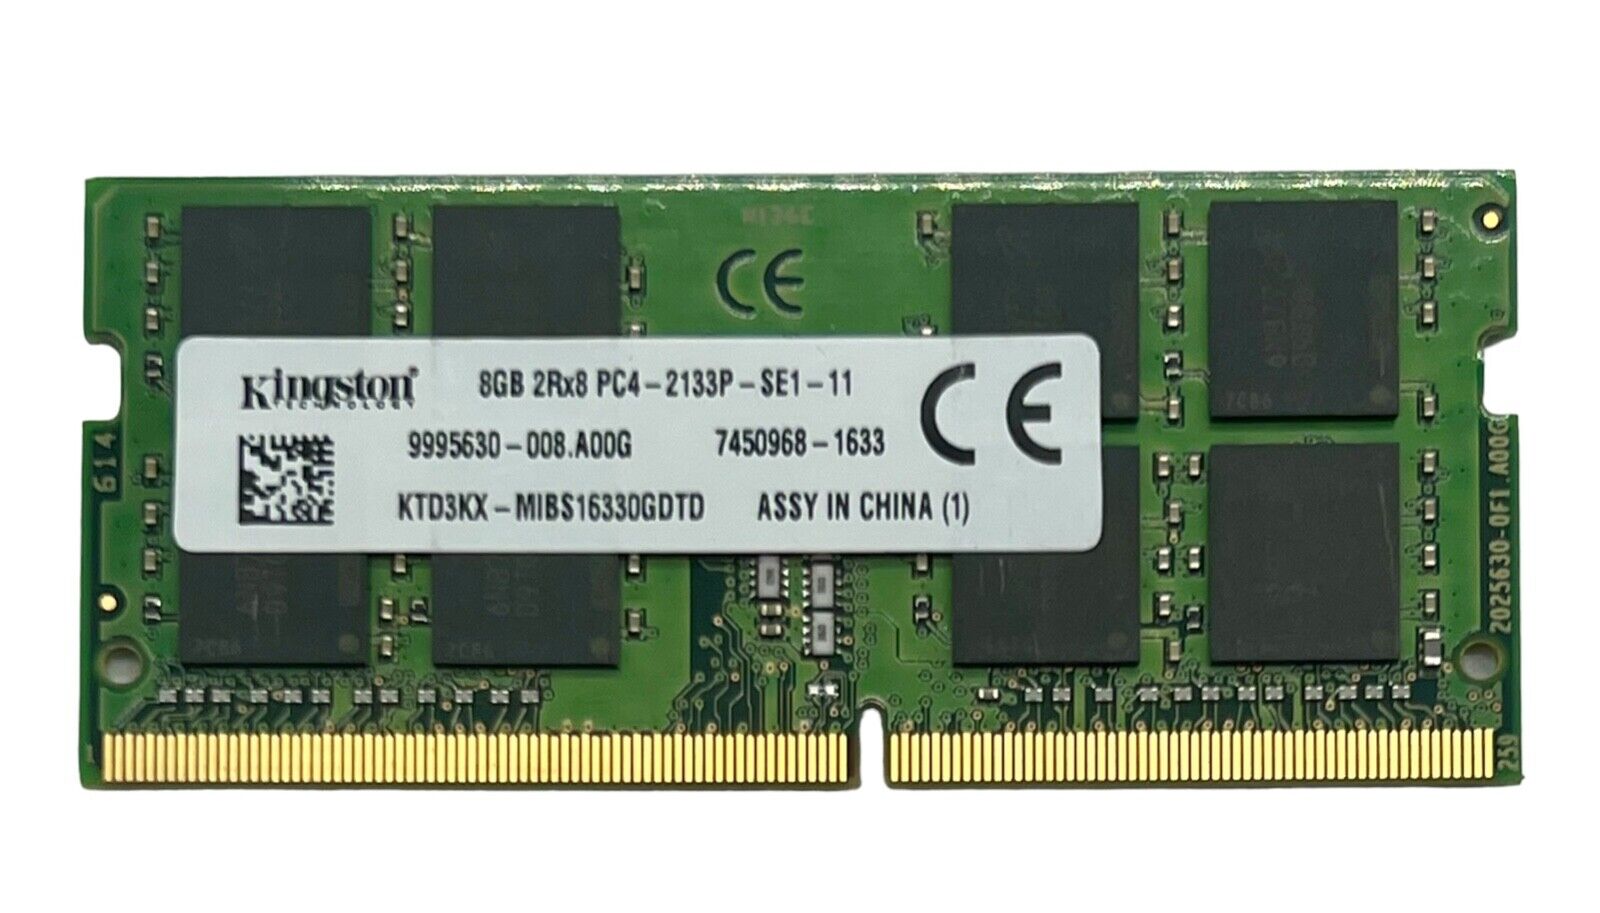 Kingston 8GB 1x8GB PC4-17000 DDR4-2133P Laptop Memory SDRAM KTD3KX-MIBS16330GDTD